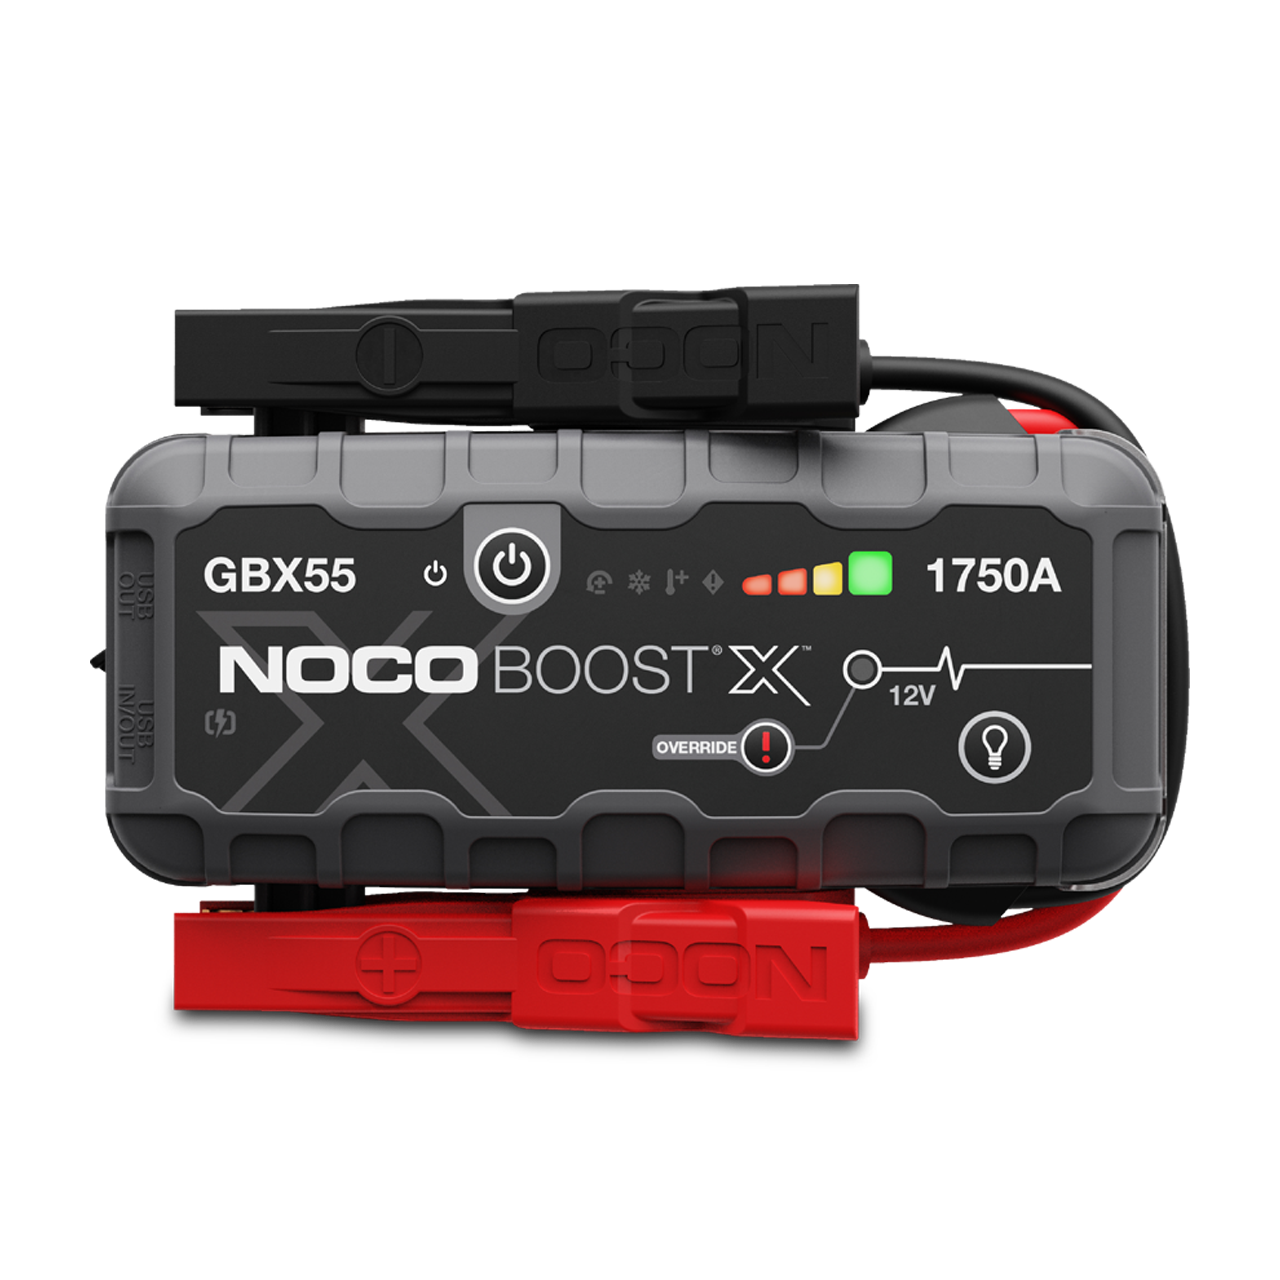 NOCO Boost X GBX55 Starthjälp 1750A 12V - Lägsta prisgaranti